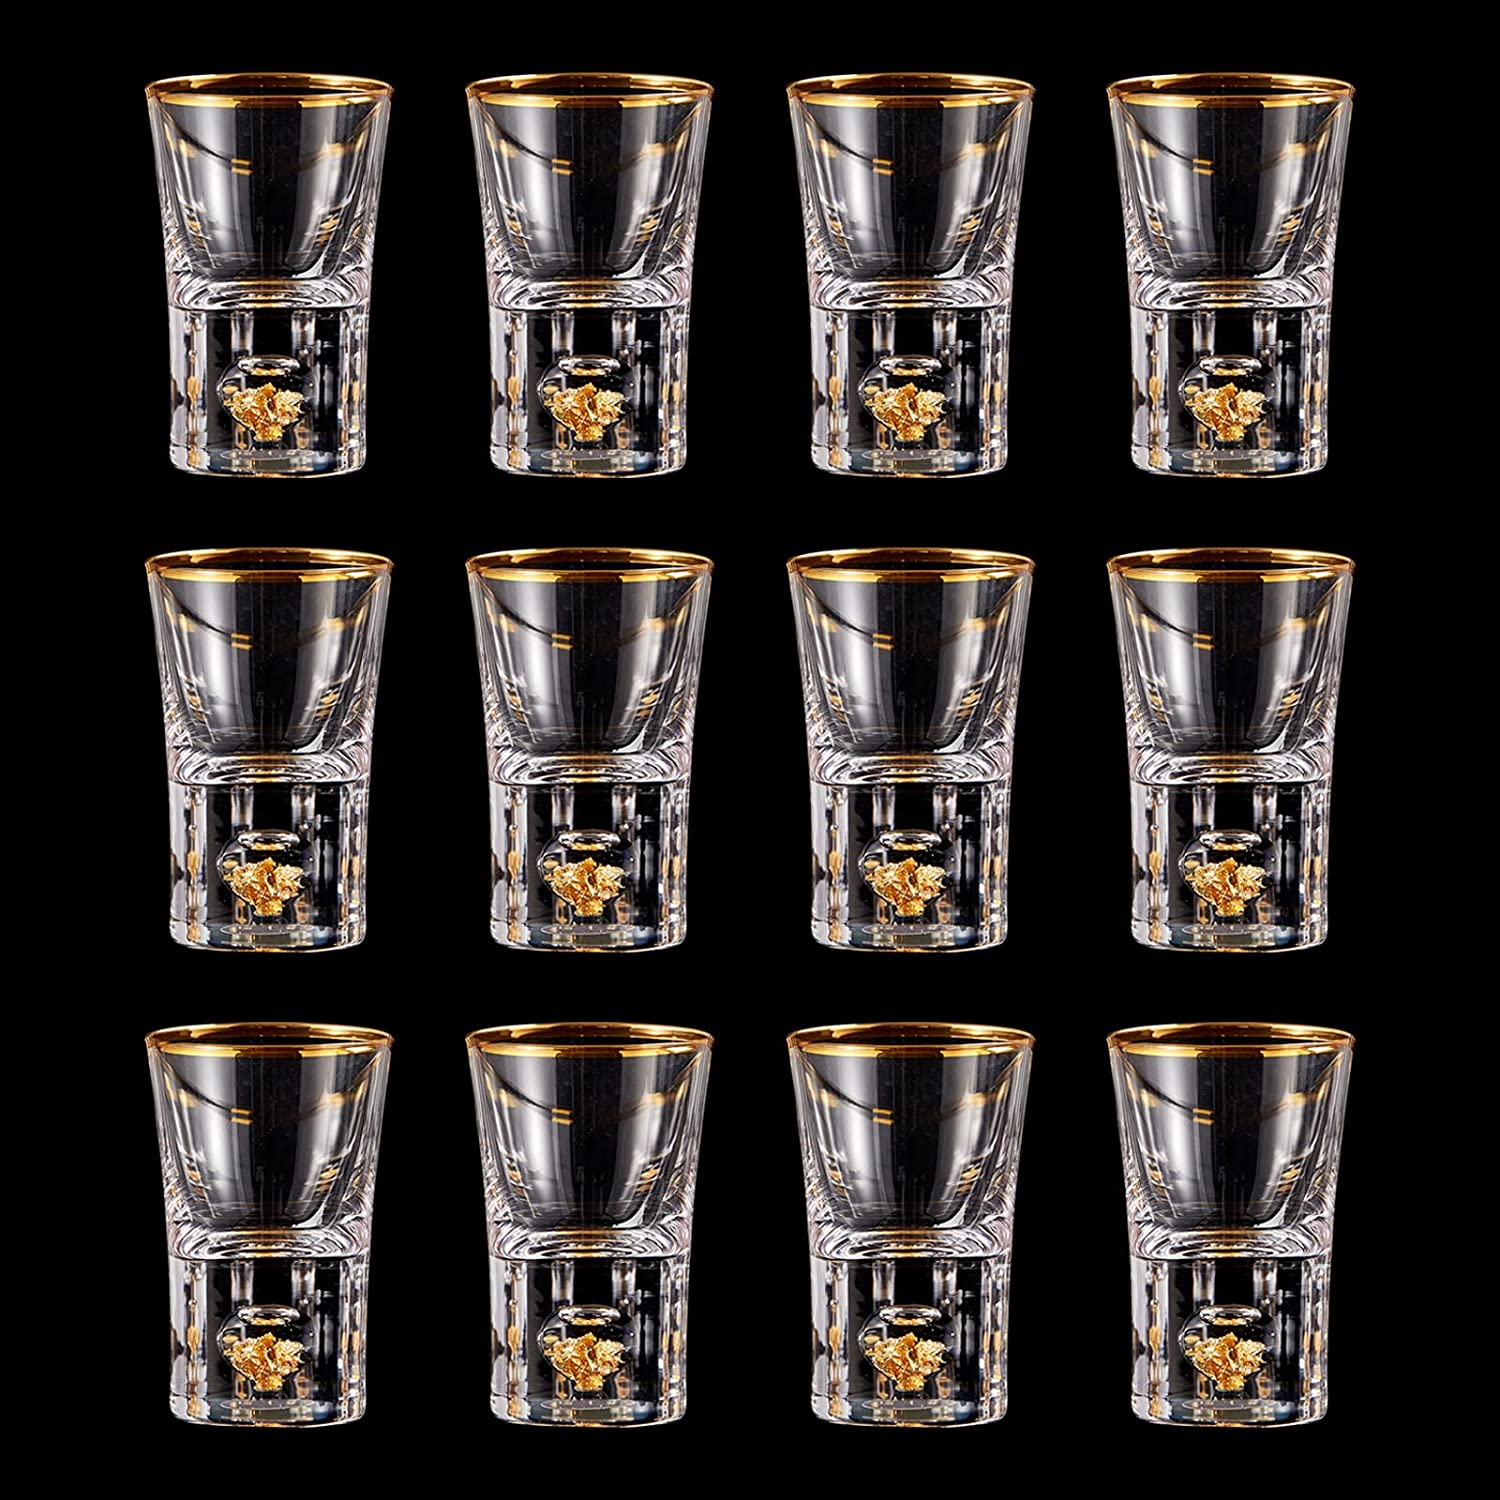 DUJUST Vasos de chupito (1.5 onzas), juego de chupitos de cristal decorado  con hojuelas de oro de 24…Ver más DUJUST Vasos de chupito (1.5 onzas)